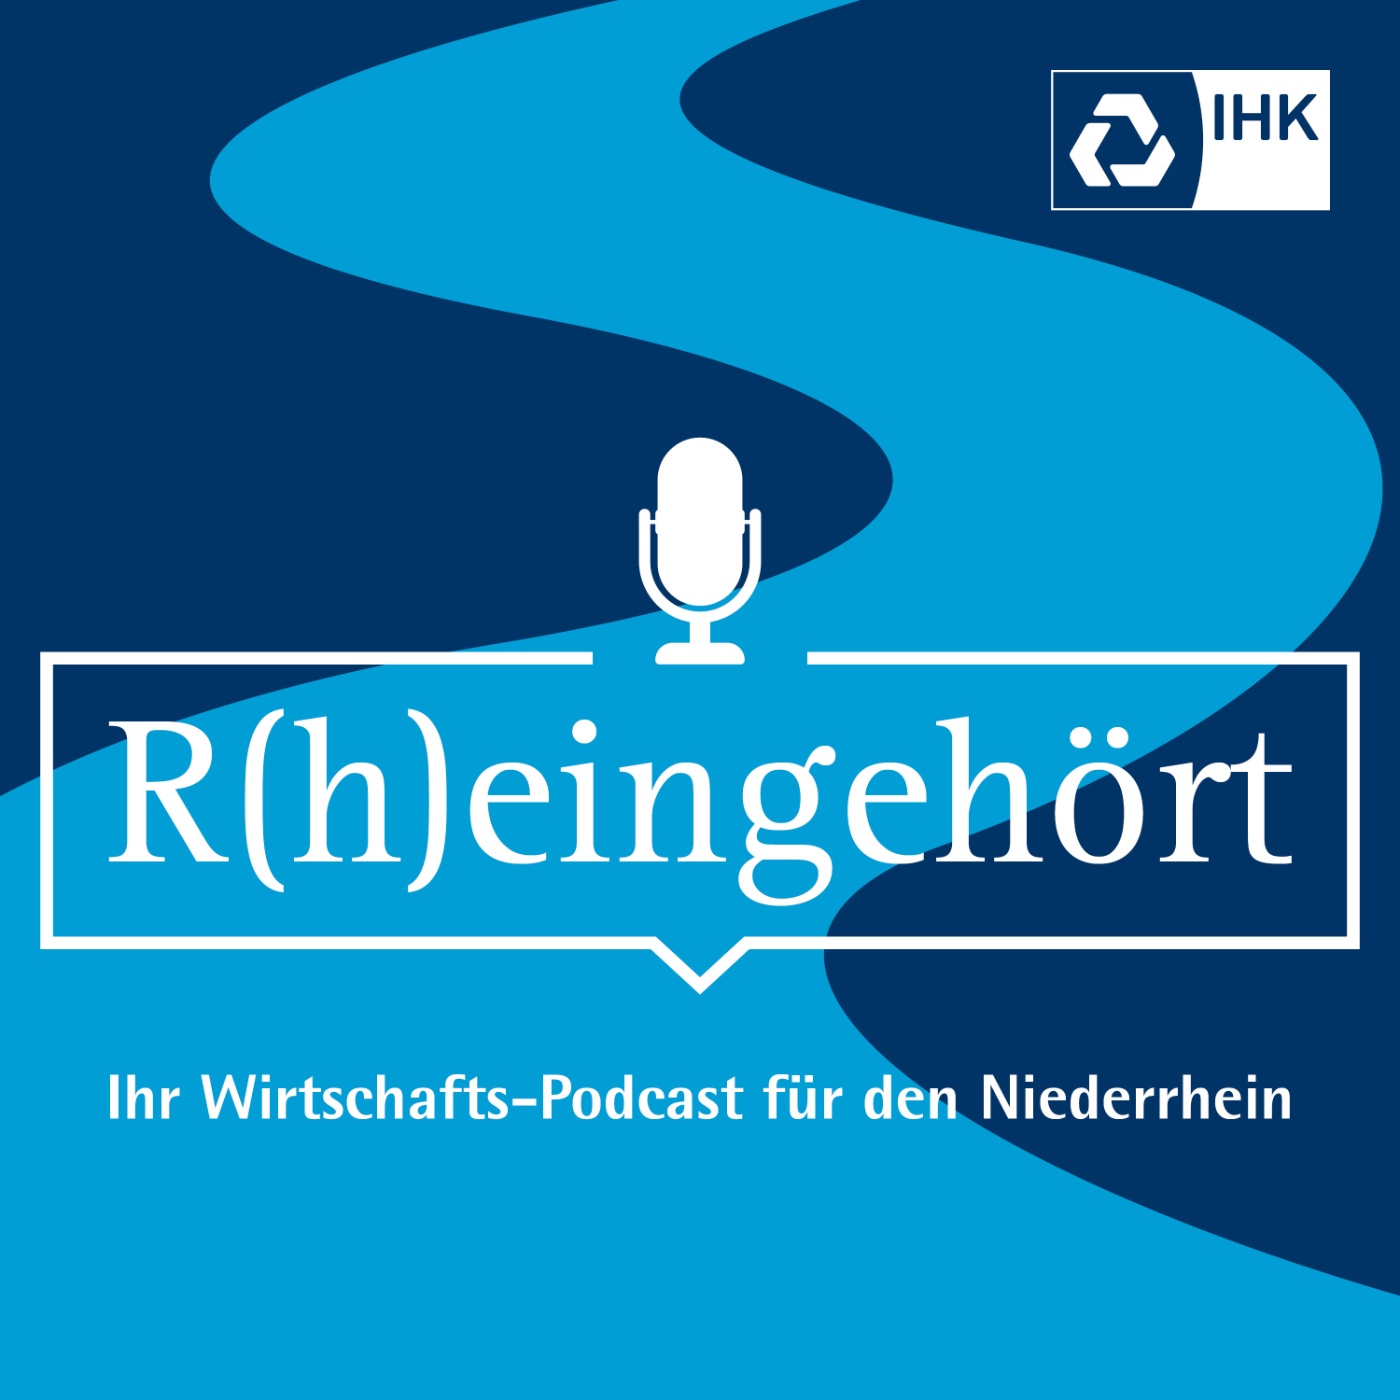 R(h)eingehört - Ihr Wirtschafts-Podcast für den Niederrhein